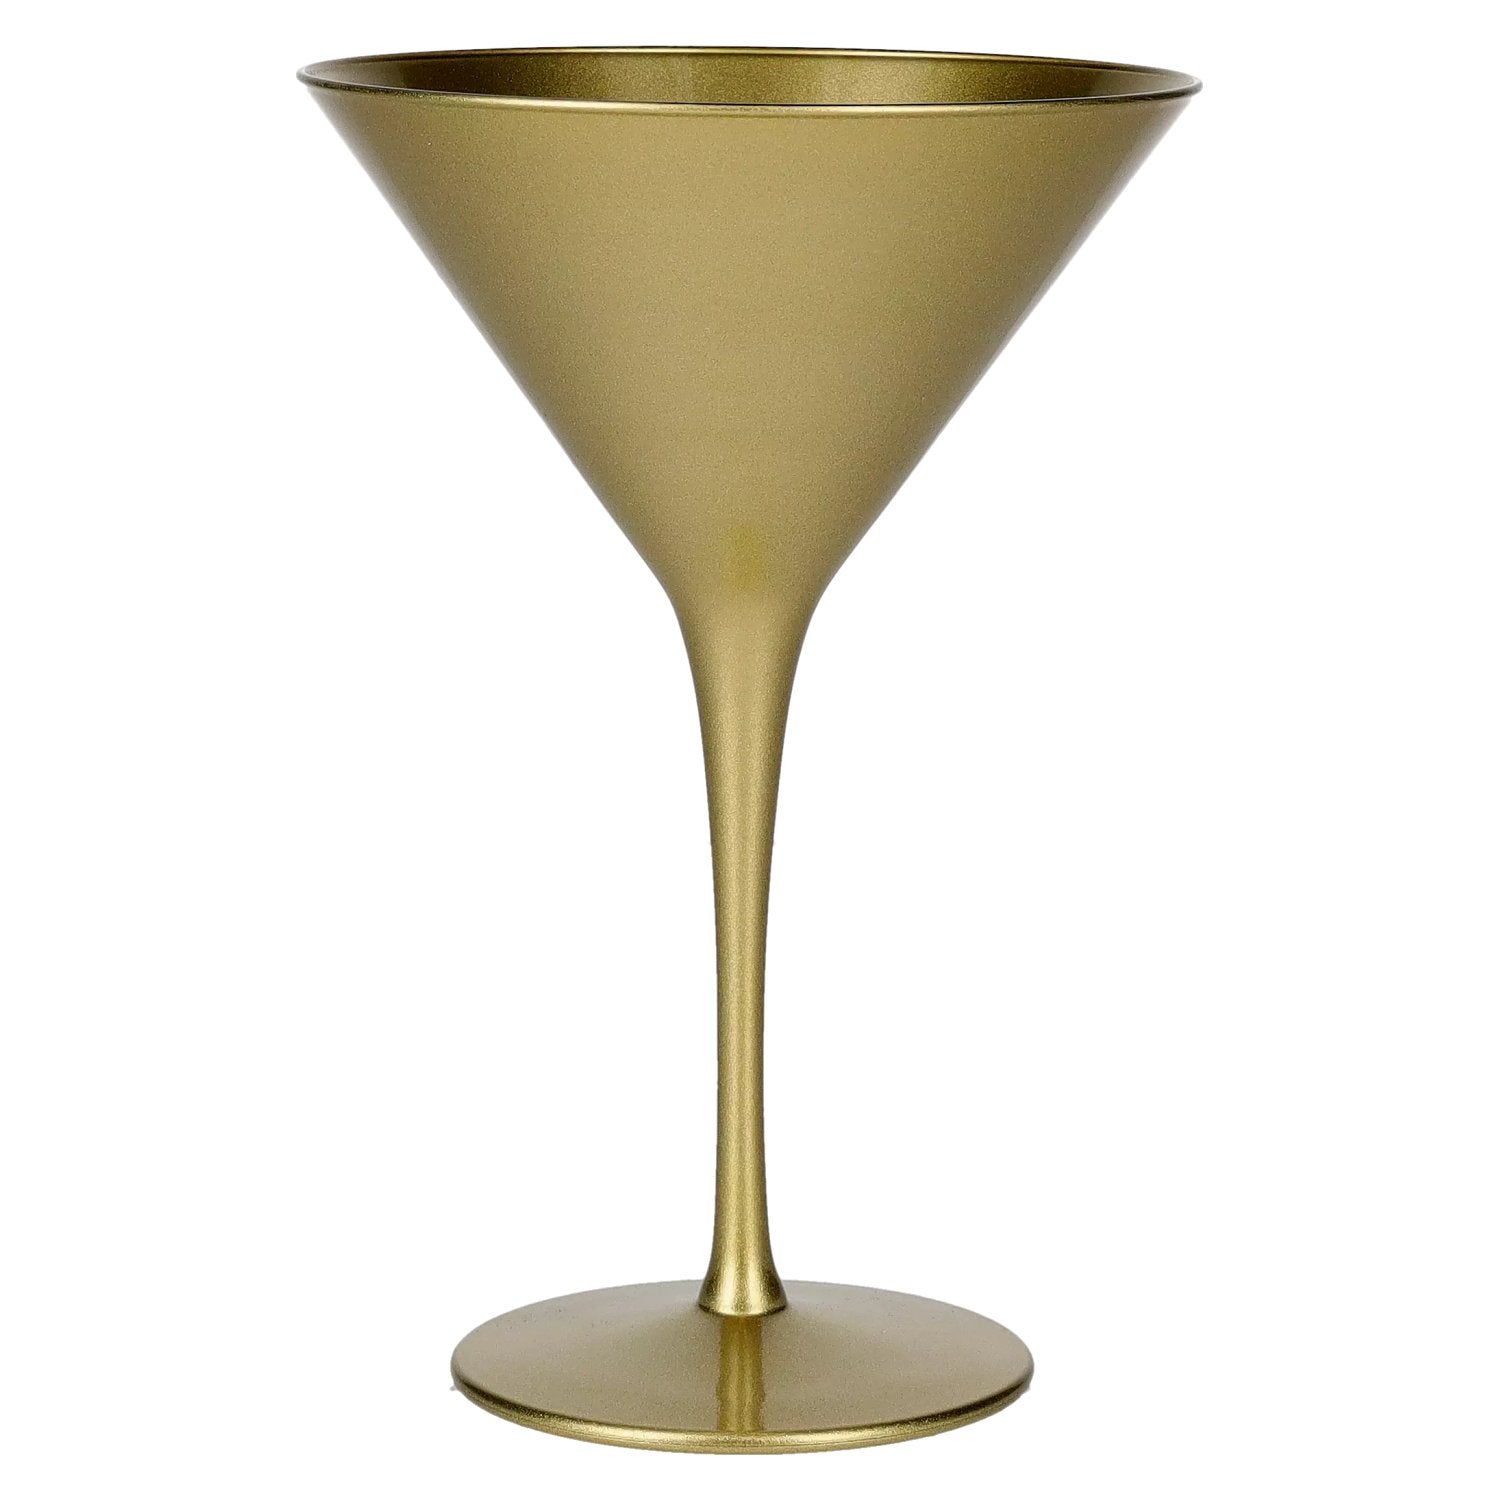 Stoelzle Lausitz Martiniglas Elements gold without calibration